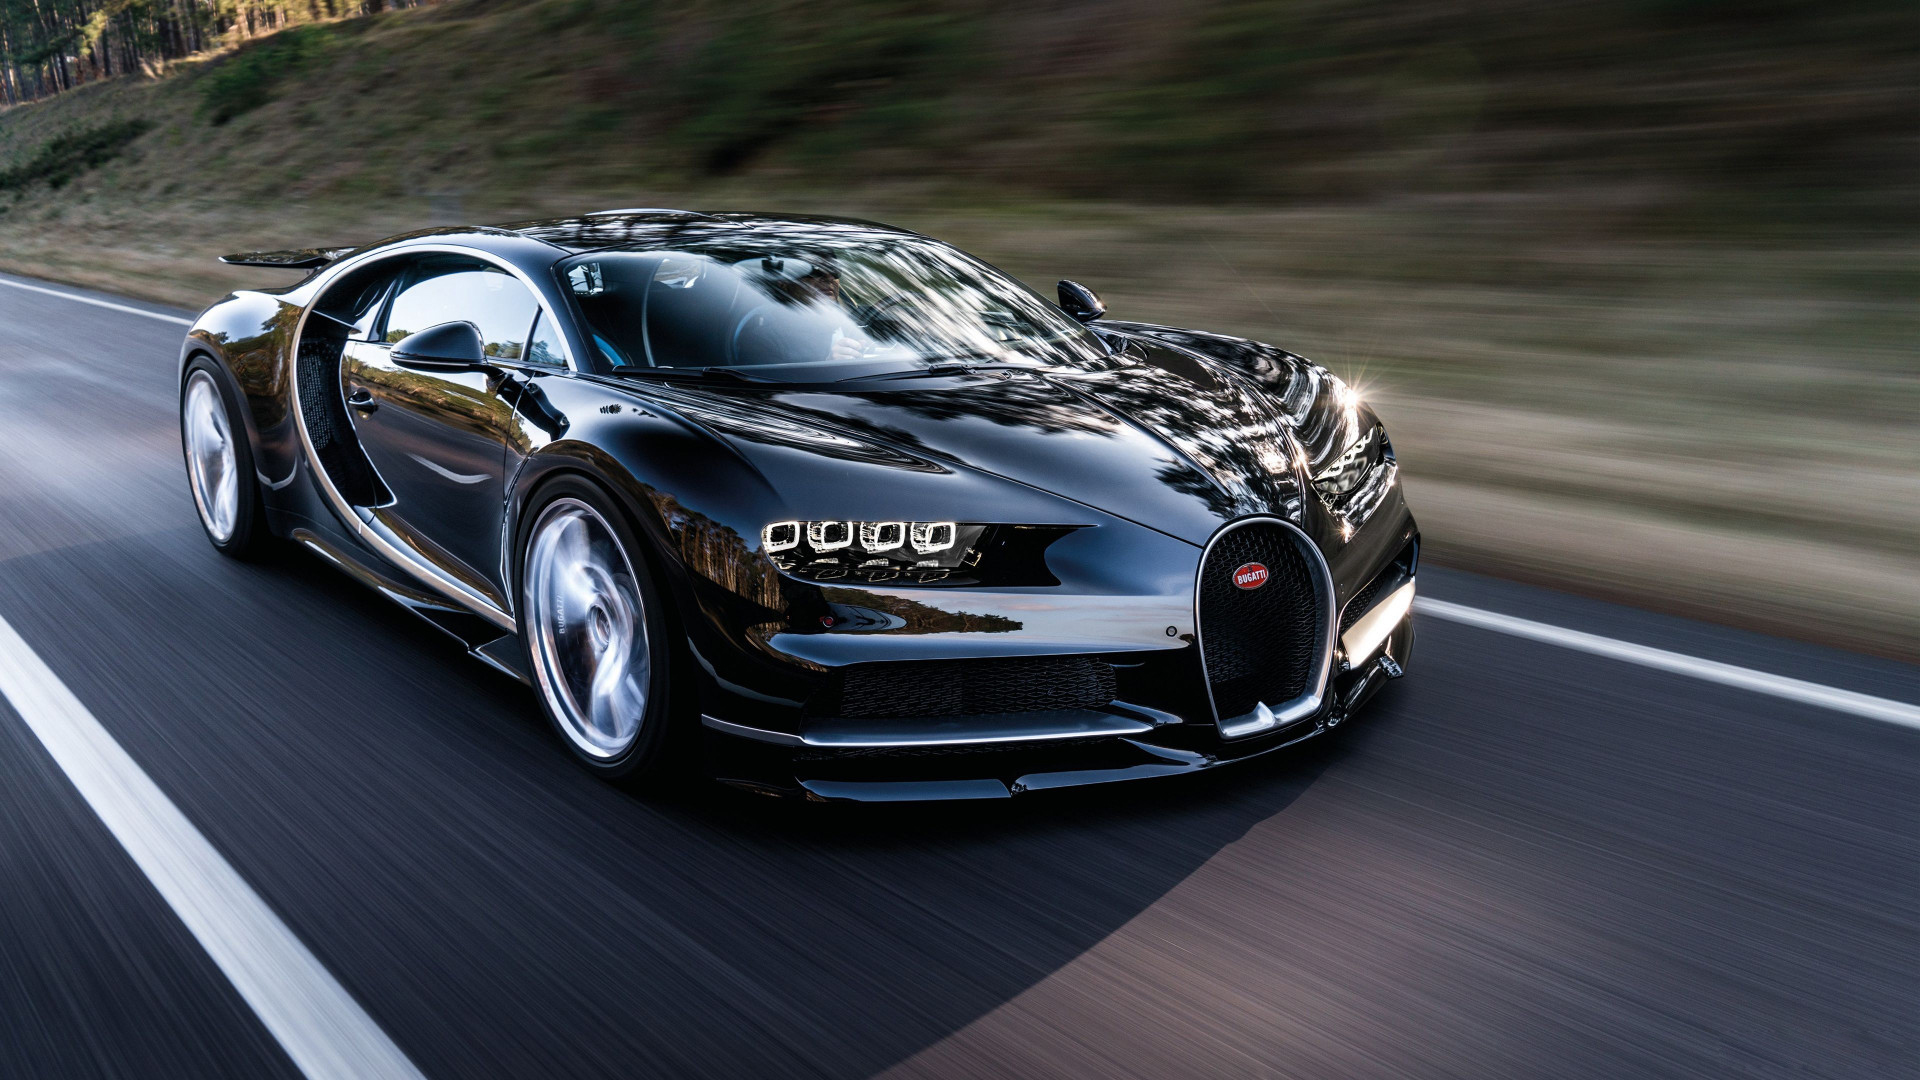 Bugatti: Những chiếc xe Bugatti đã chứng minh được sự mạnh mẽ và tốc độ của nó trên đường đua. Hãy xem những hình ảnh của chúng tôi để cảm nhận được vẻ đẹp và sức mạnh của những chú \